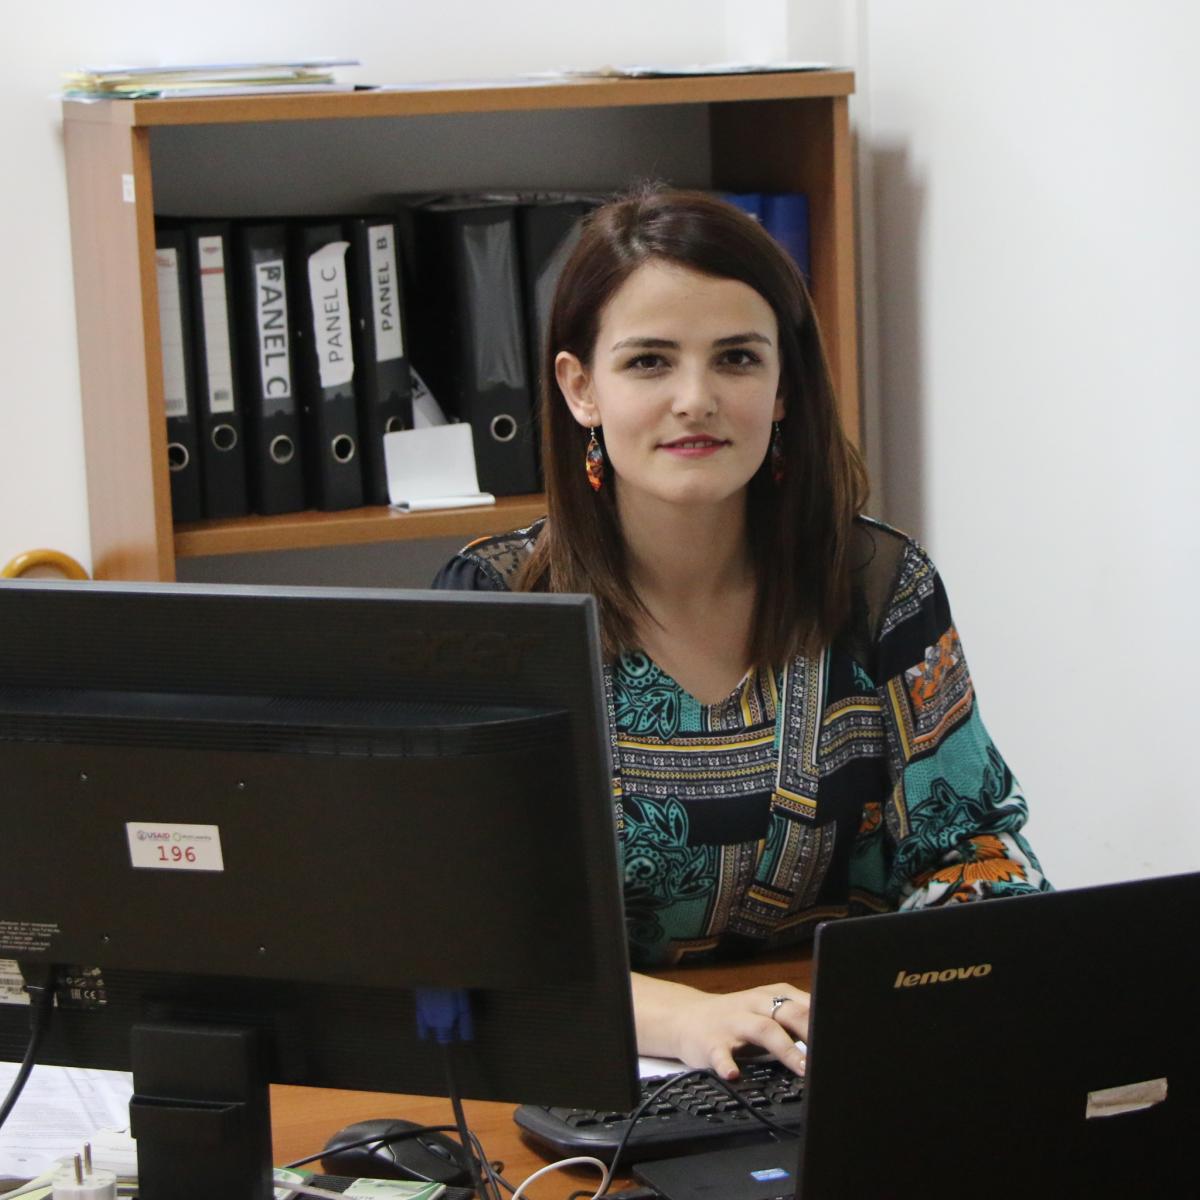 Akademkinja Sa Kosova Promovise Startapove Preko Svog Nekadasnjeg Univerziteta